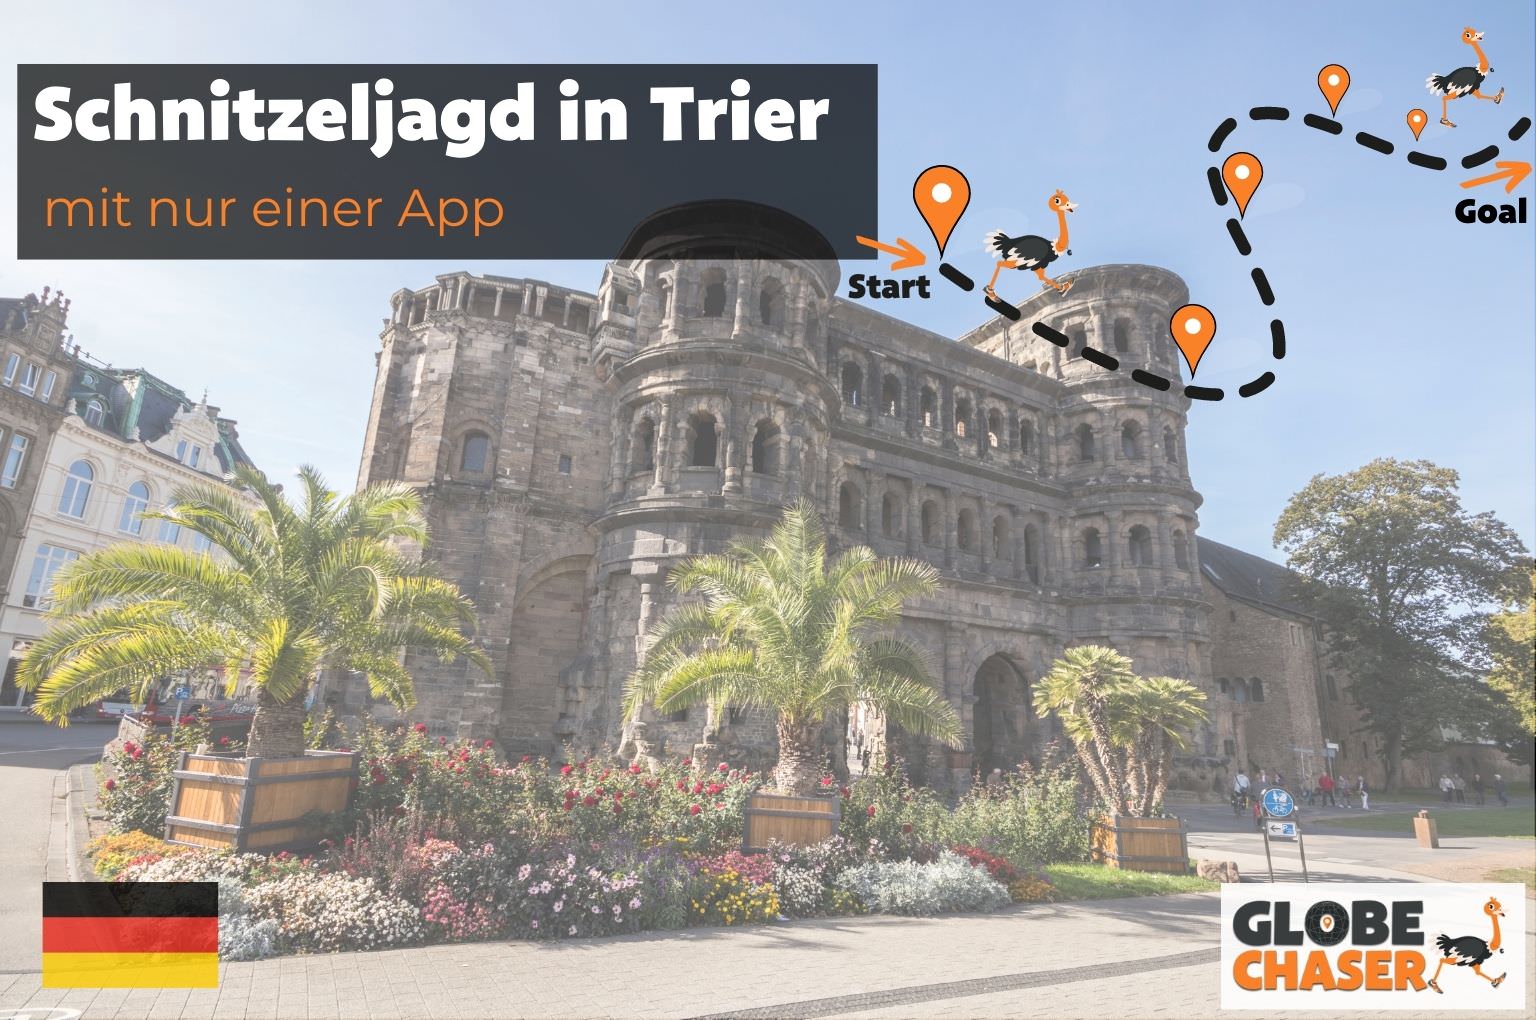 Schnitzeljagd in Trier mit App - Globe Chaser Erlebnisse Deutschland